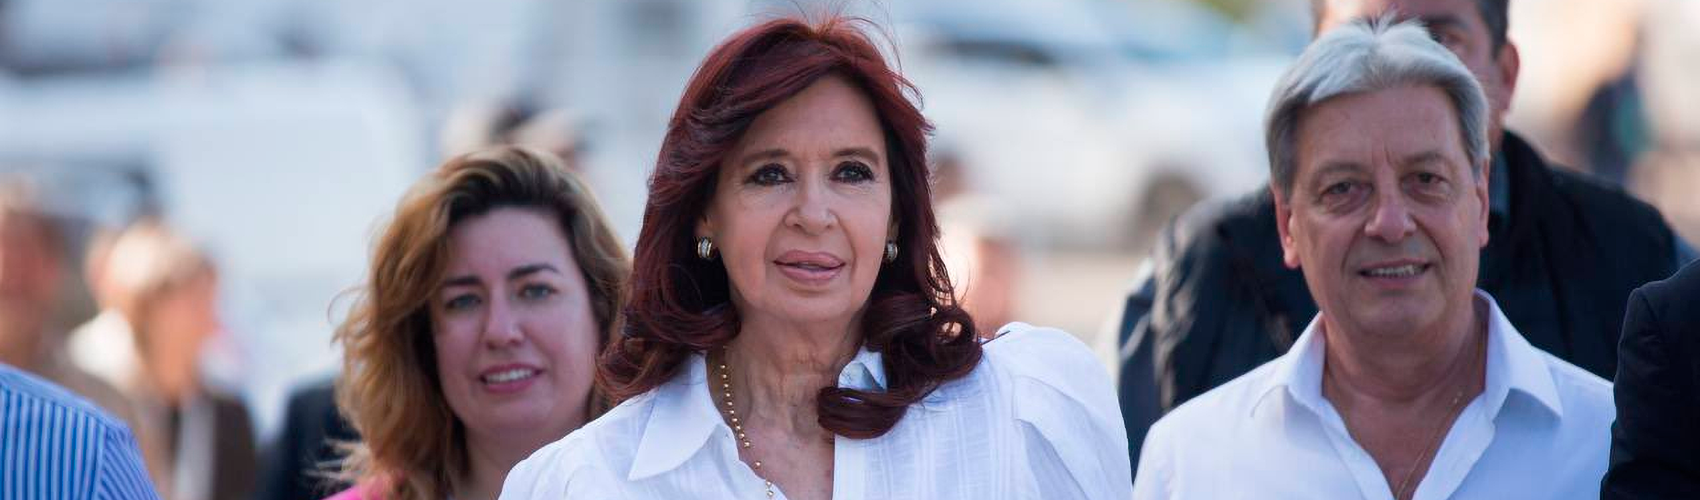 Kirchner: "Não vão investigar atentado. Sirvo de acusada, mas não de vítima ao partido judicial”